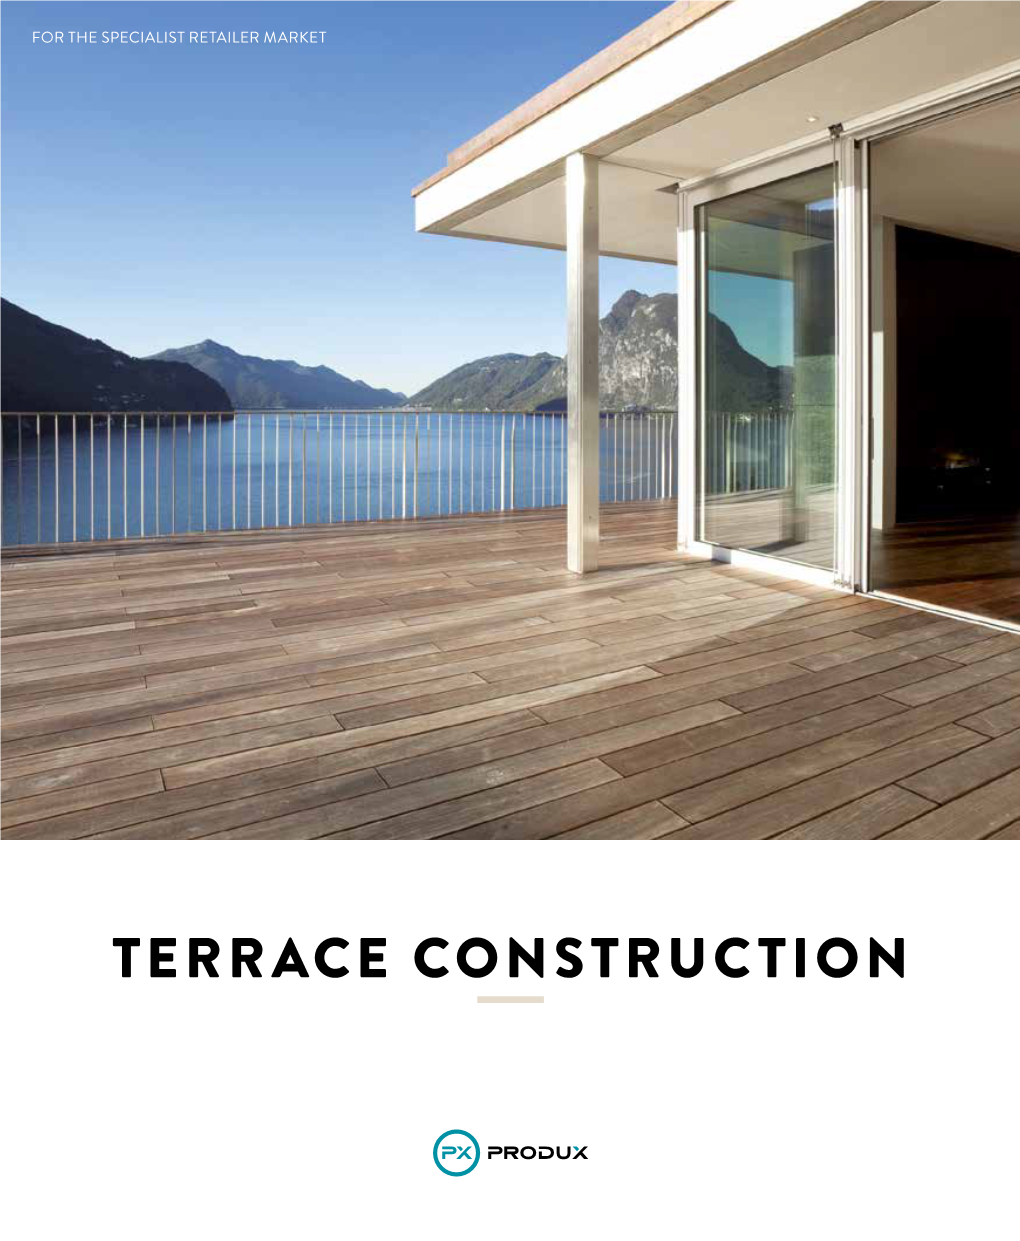 Terrace Construction Content